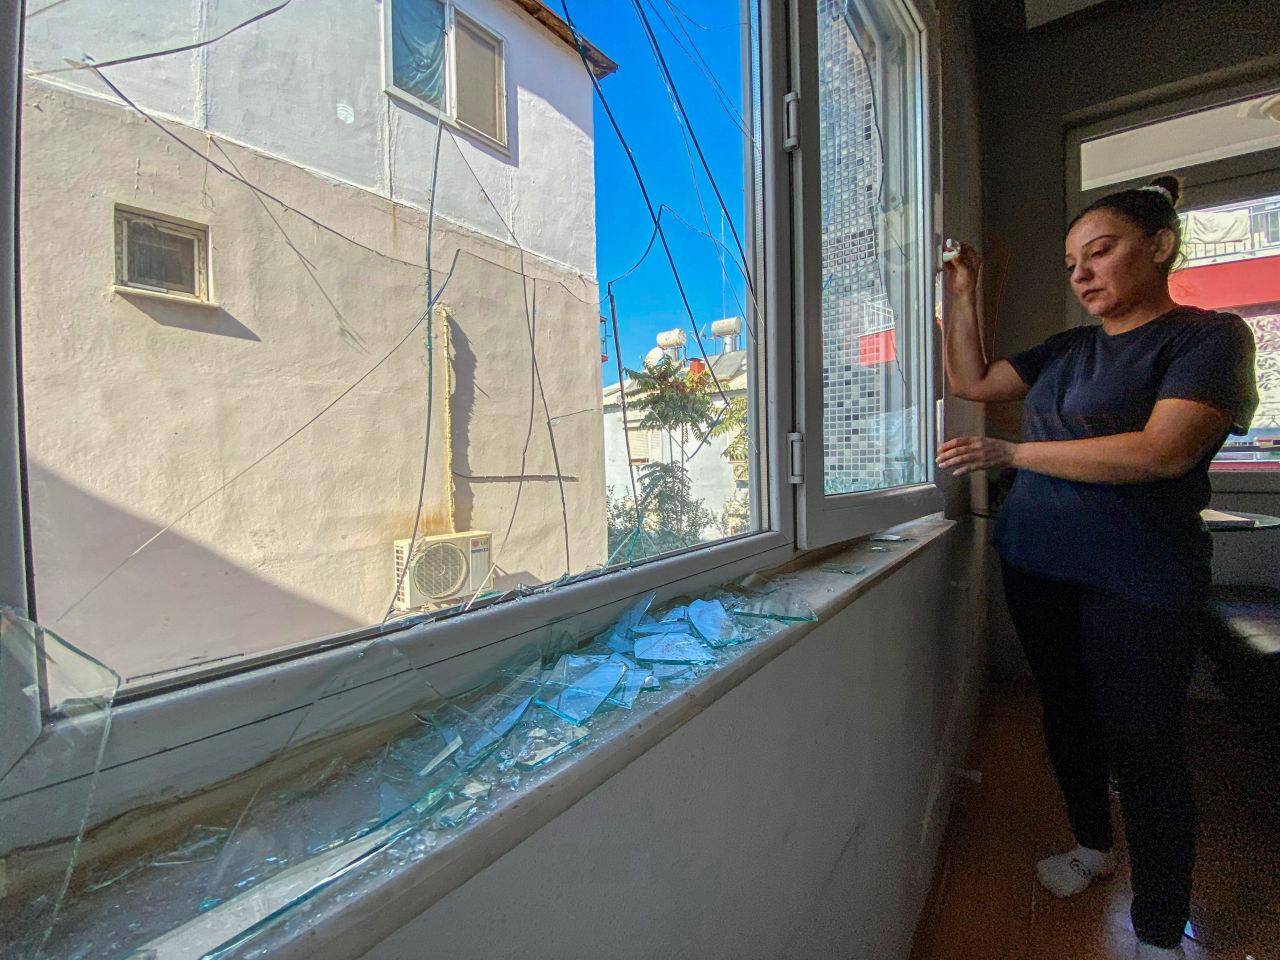 Engelli oğlu ile yaşayan kiracısını tahliye etmek istedi: Camlarını kırdı